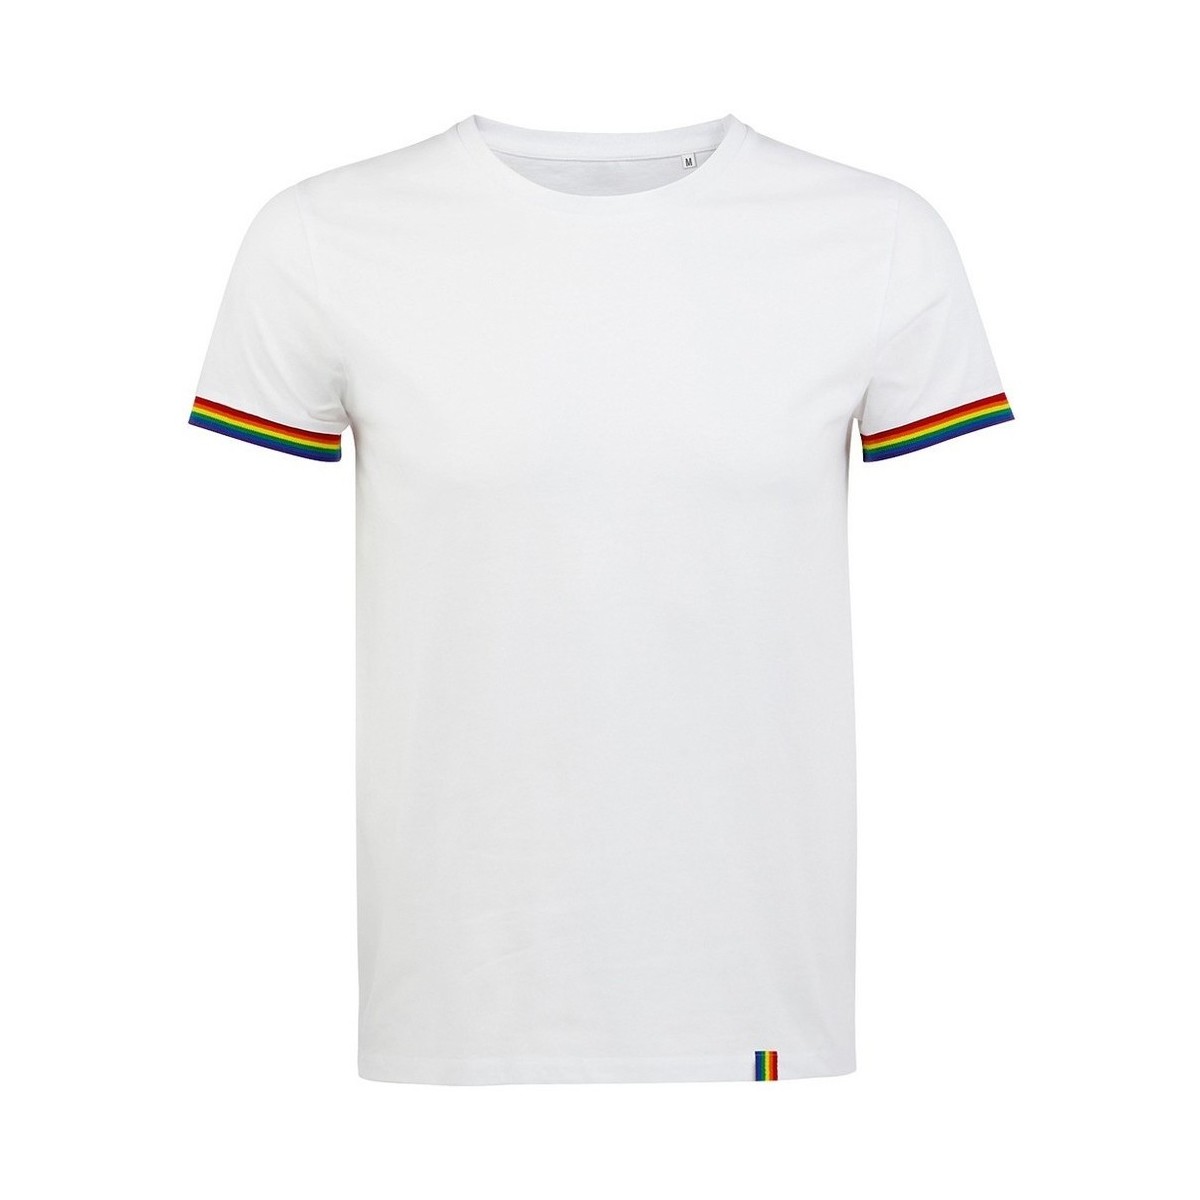 Vêtements Homme mixed-print panelled shirt 03108 Multicolore